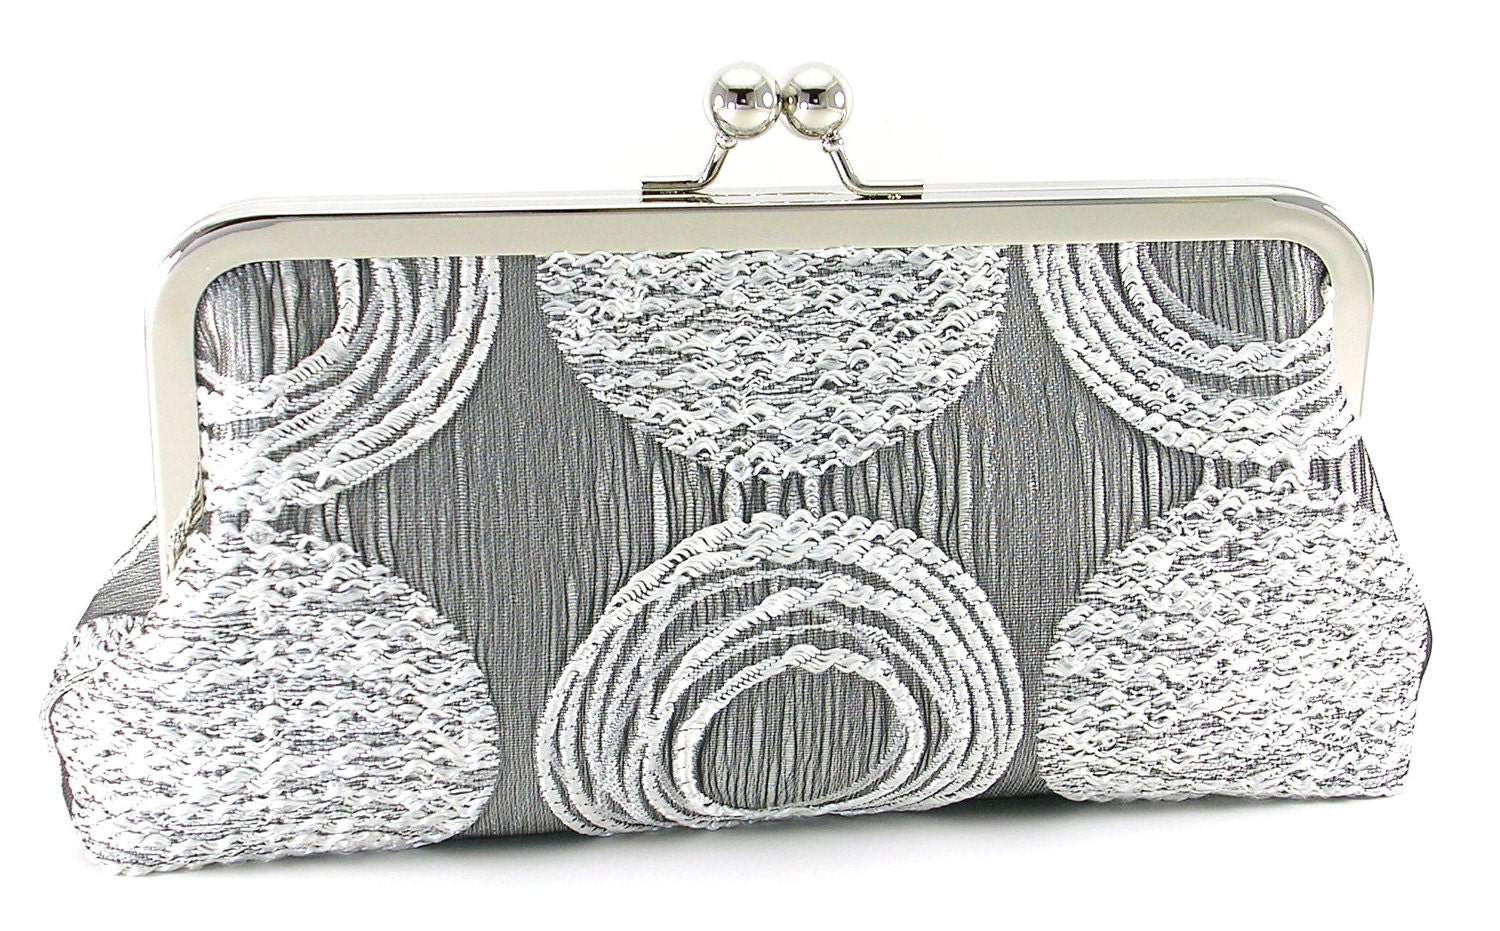 Silver Clutch Handbag by BagBoy - BagBoy